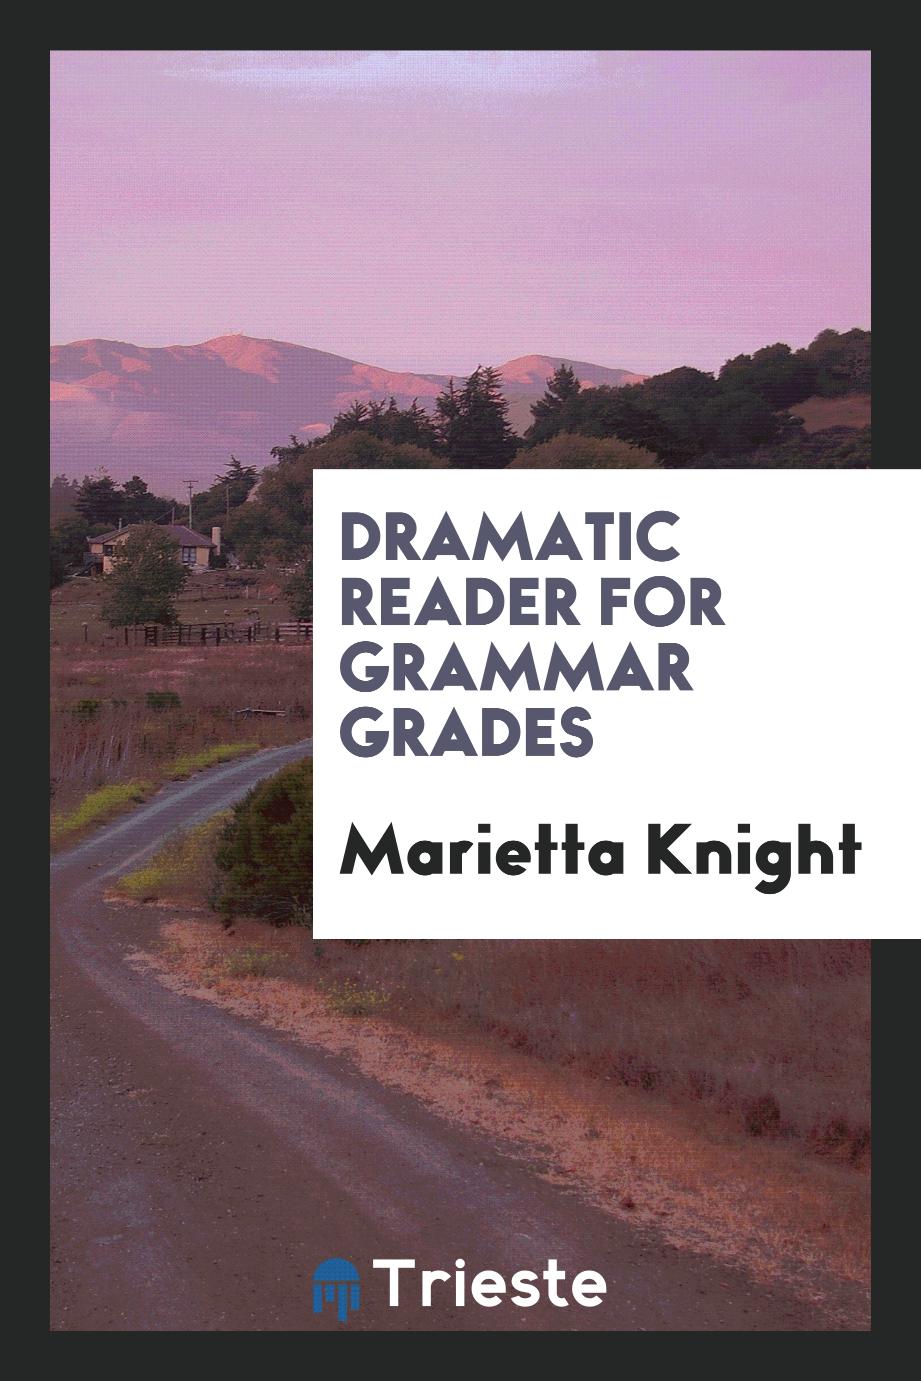 Dramatic reader for grammar grades